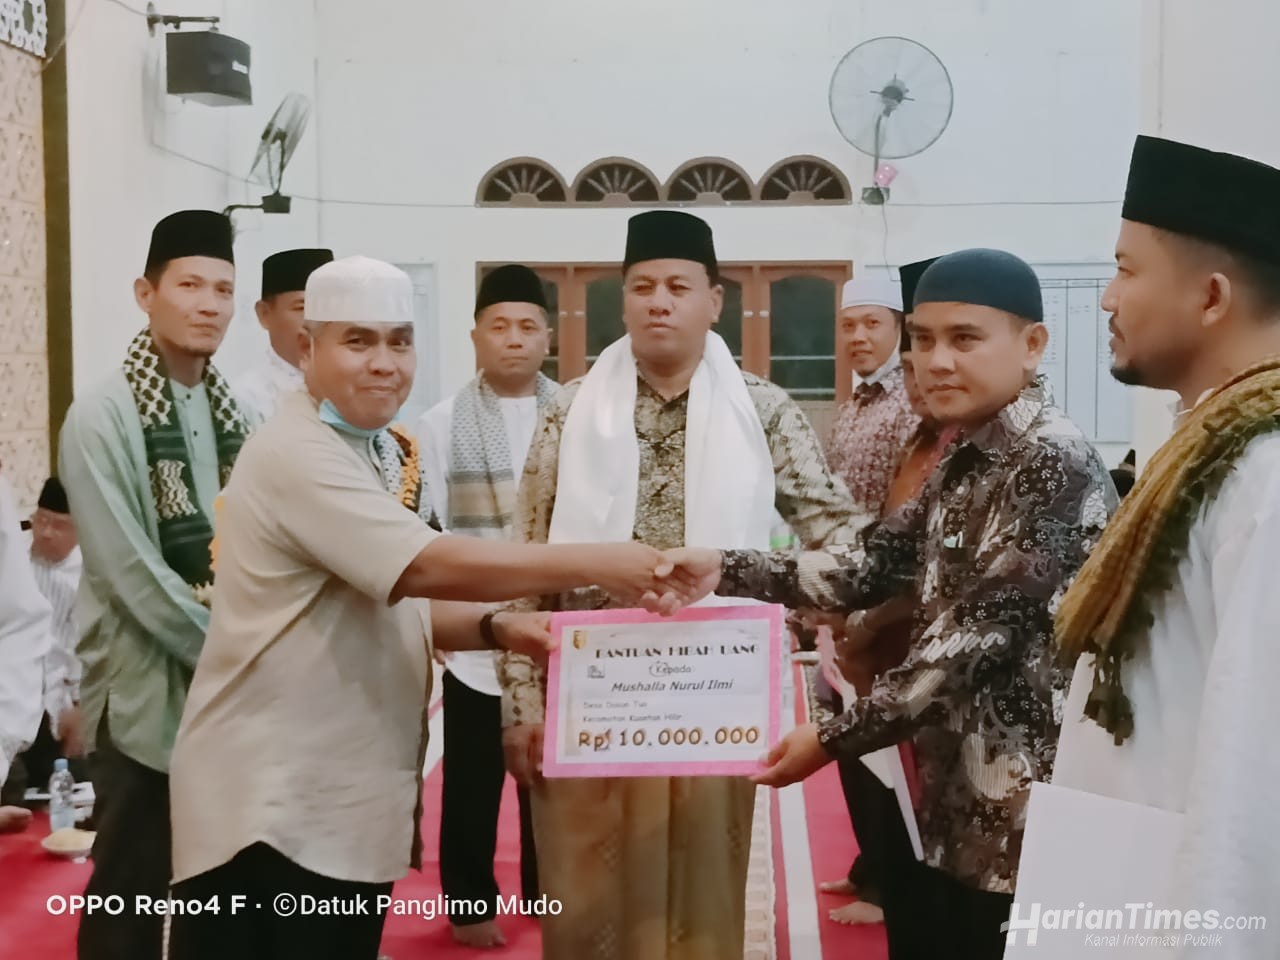 Plt Bupati Suhardiman: Pacu Jalur di Baserah Juga di Meriahkan Dengan Lomba Kebudayaan